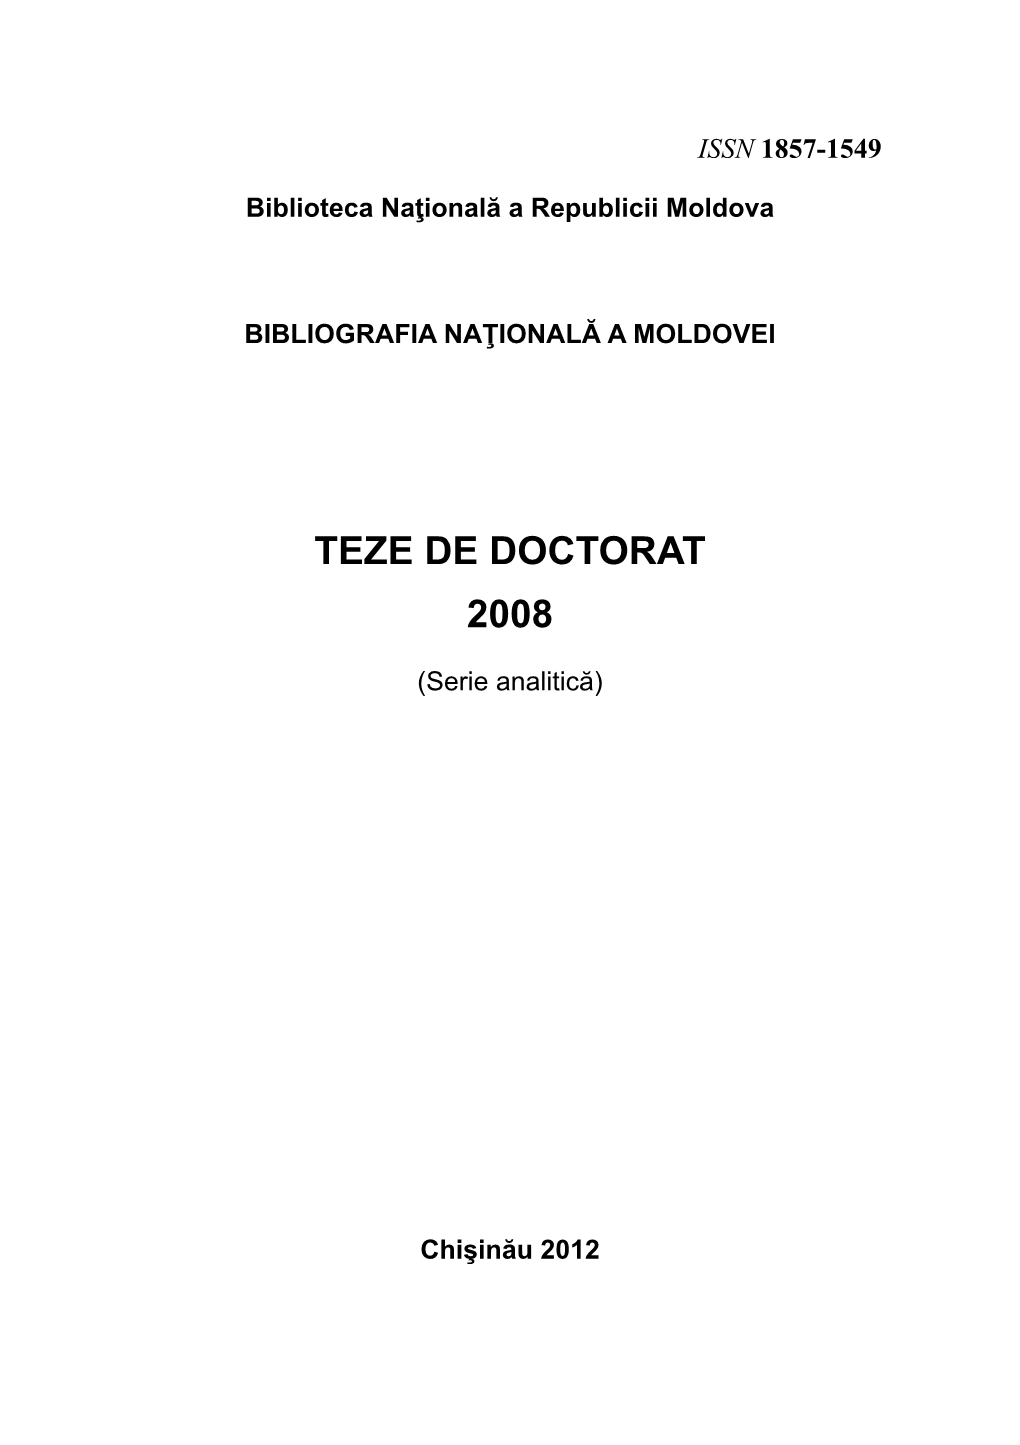 Teze De Doctorat 2008